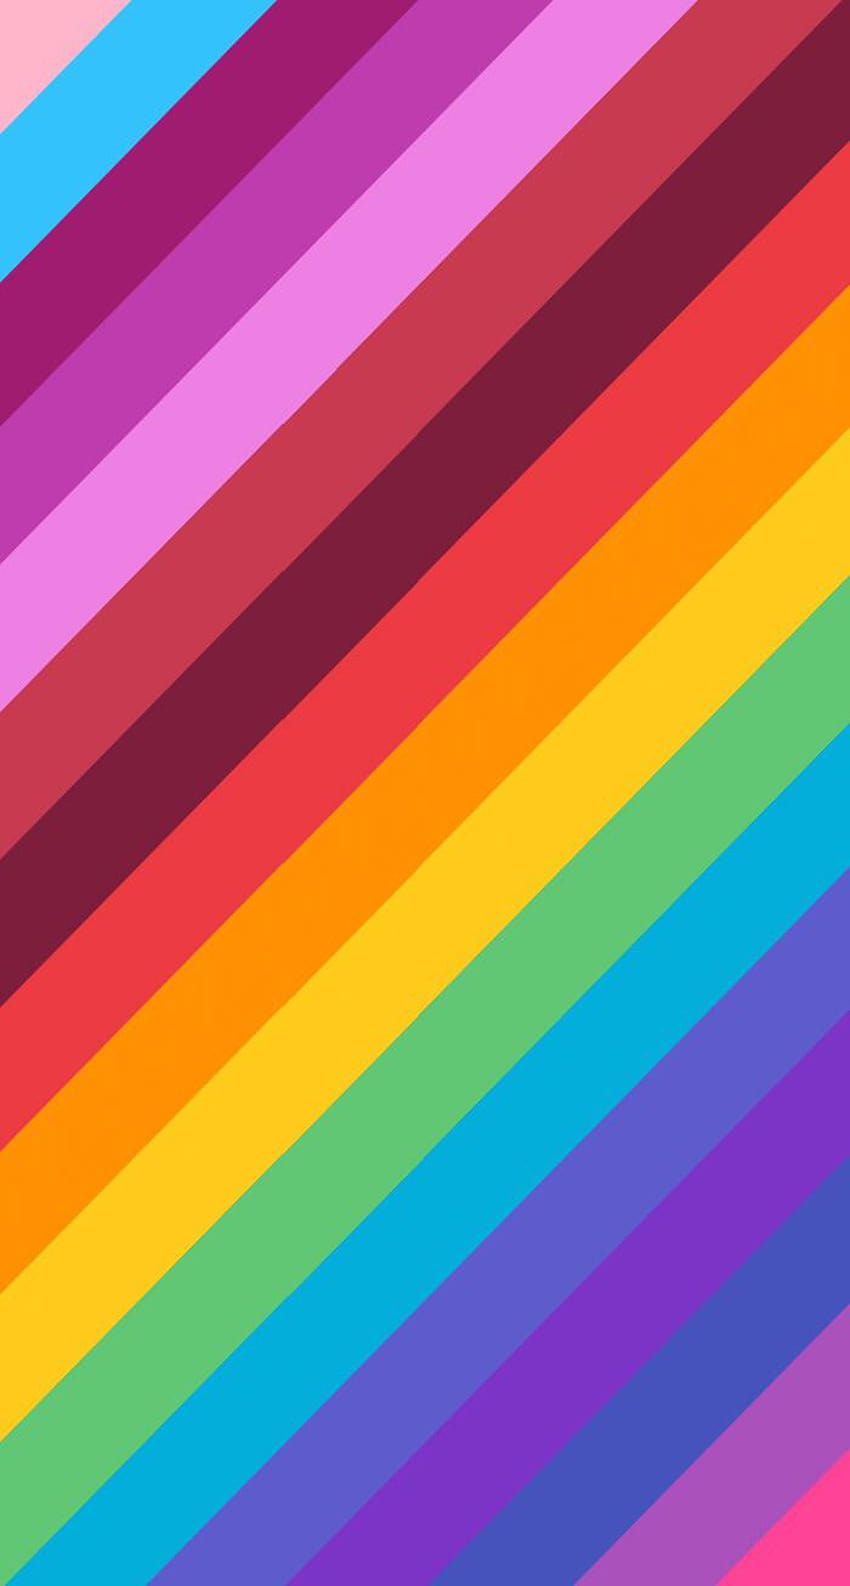 Editei o logotipo do orgulho do Twitch para fazer um para o seu telefone, telefone do orgulho Papel de parede de celular HD